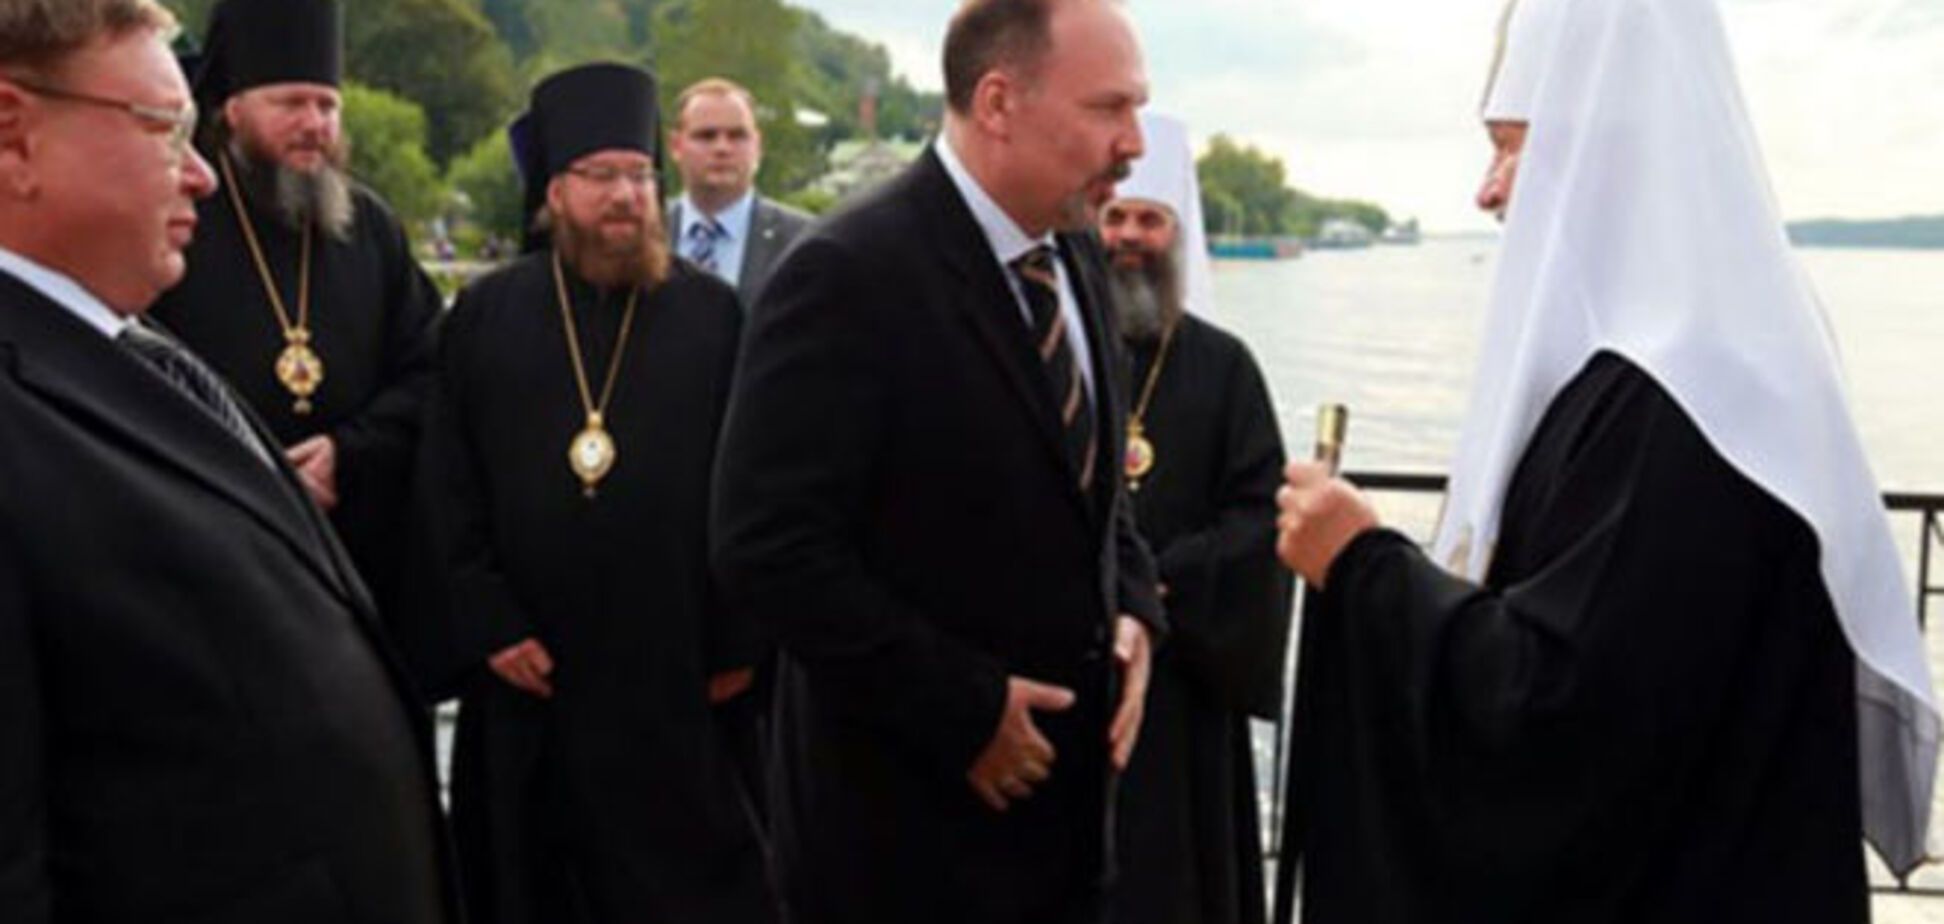 Патриарх Кирилл прибыл к прихожанам на личной люксовой яхте: опубликованы фото